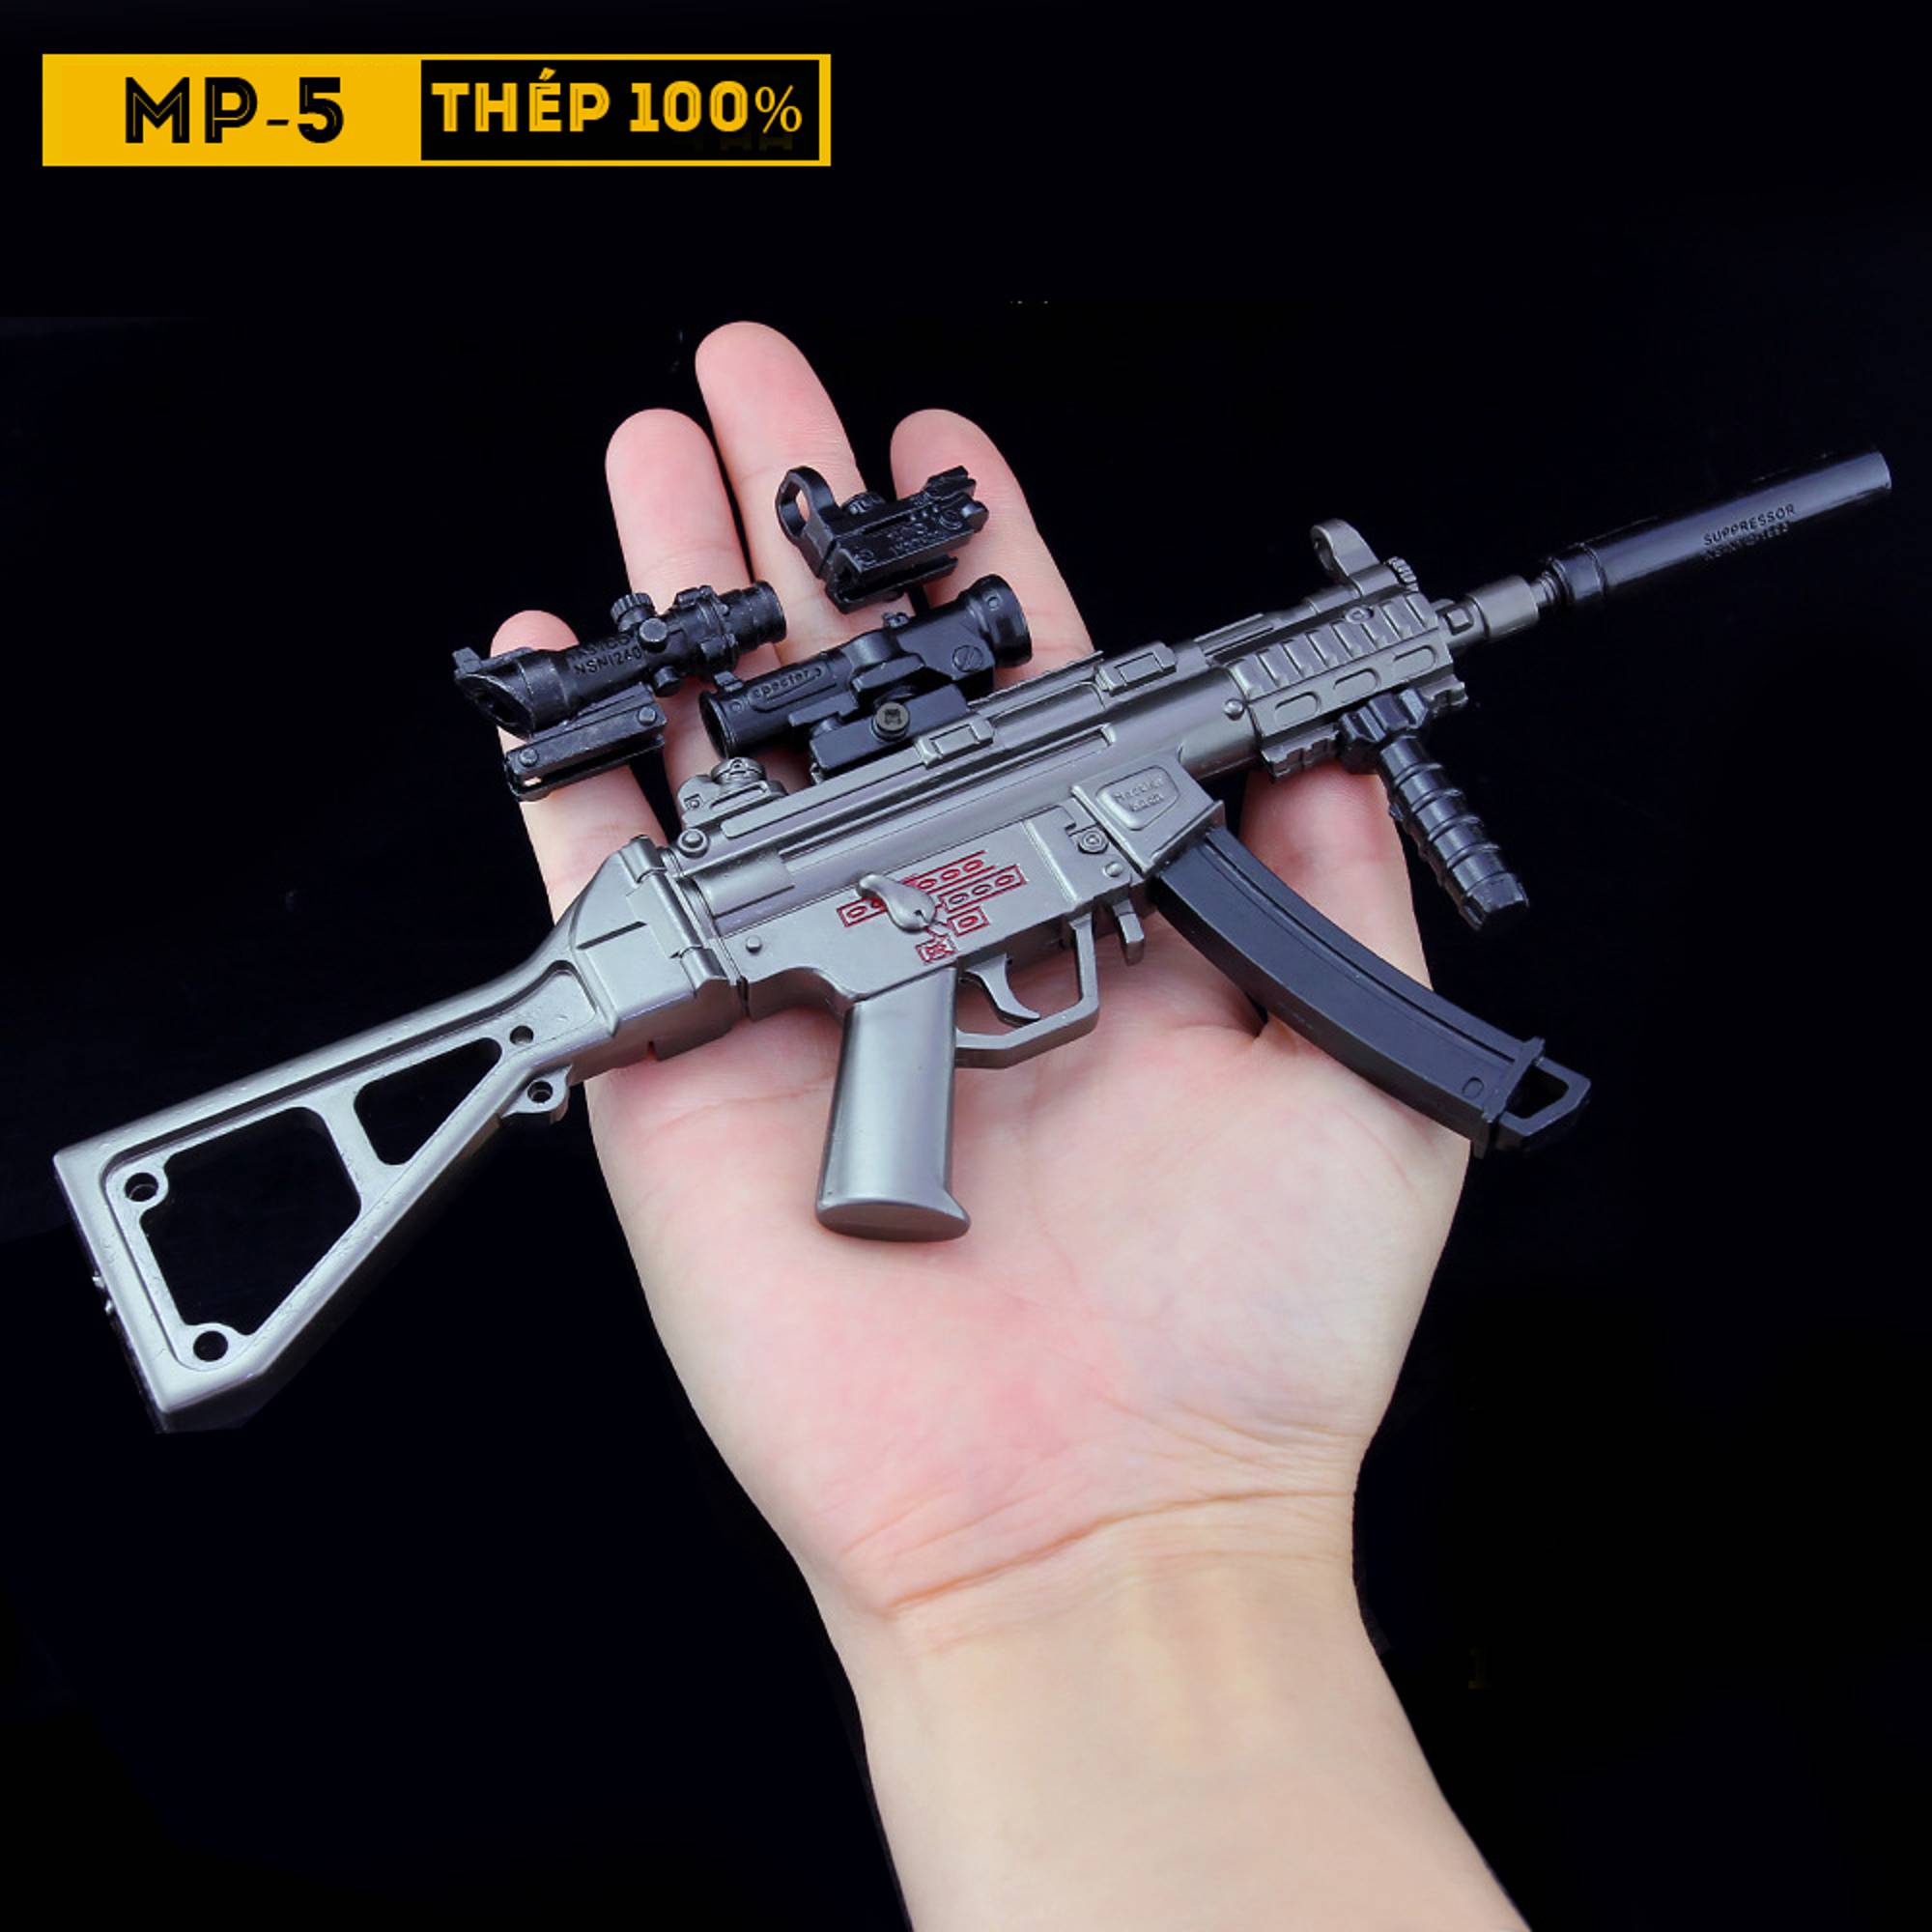 SÚNG BẮN HẠT NỞ MP5  Siêu Phẩm 31 huyền thoại  Shopgelguncom